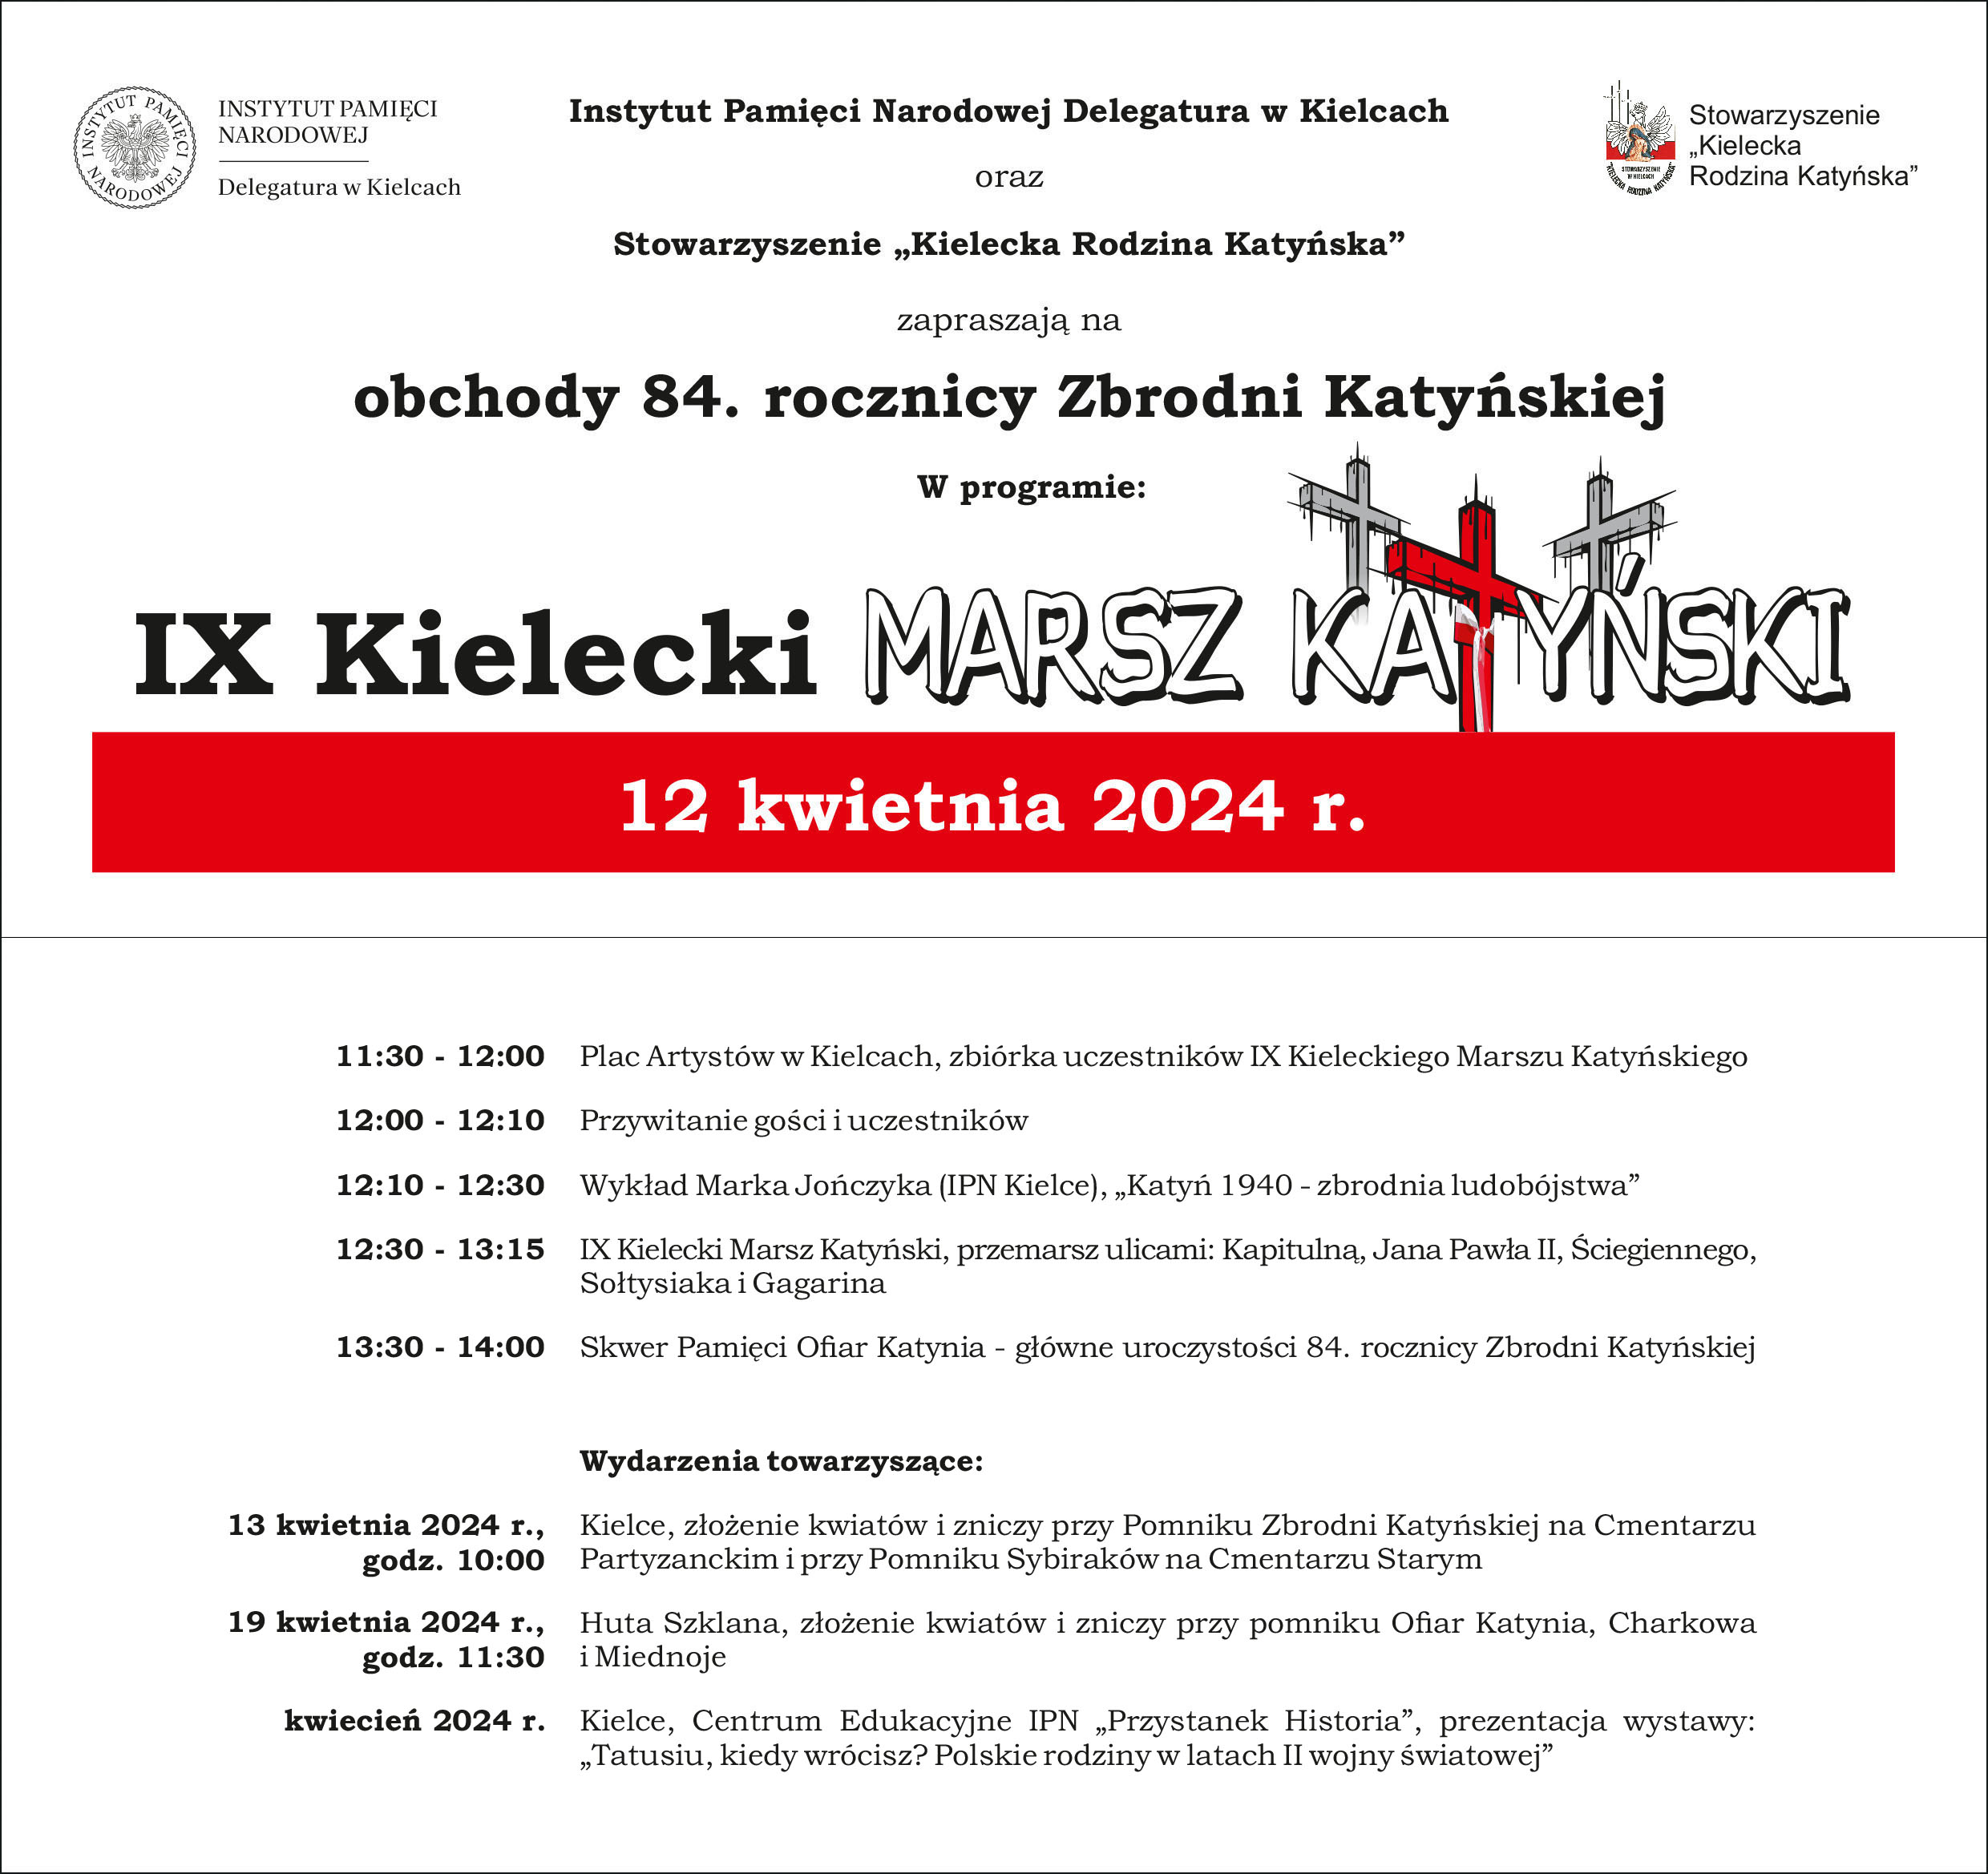 IX Kielecki Marsz Katyński program